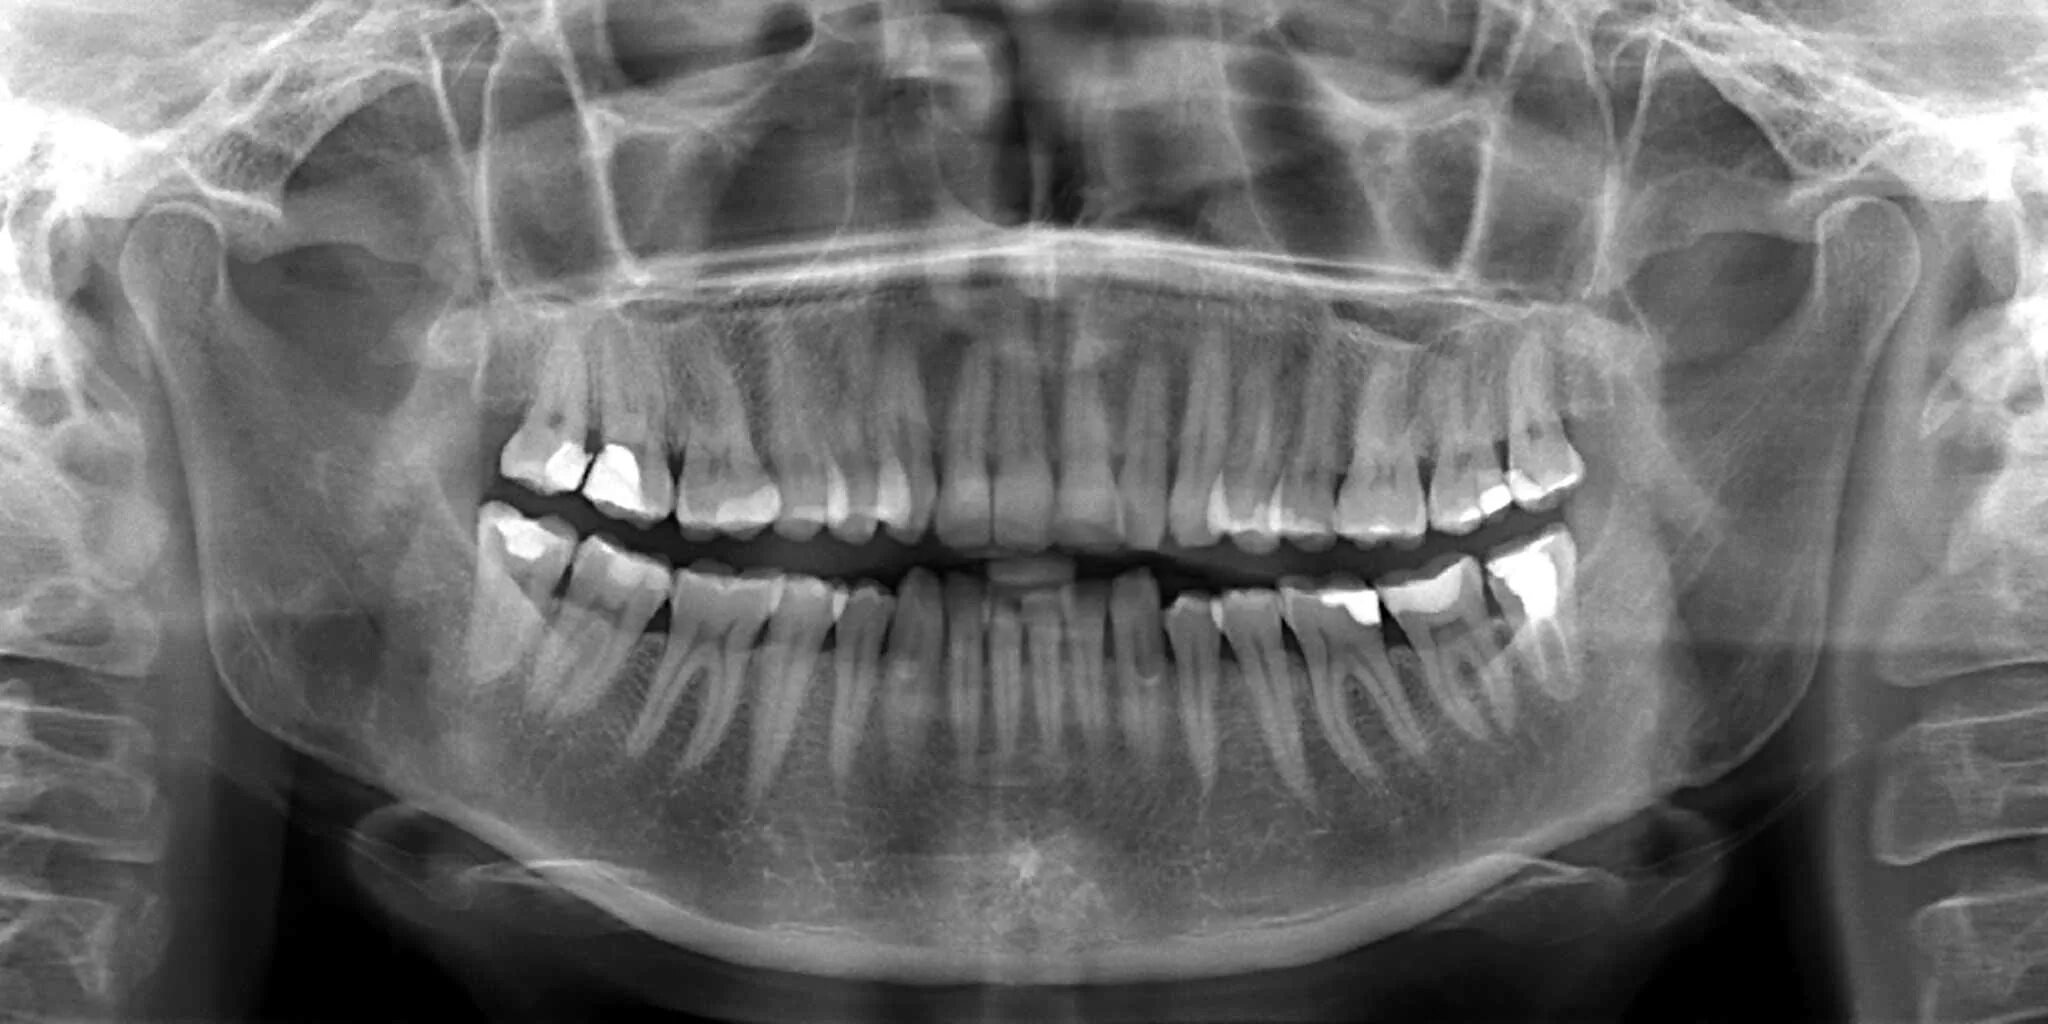 Рентген ортопантомограмма зубов. Ортопантомограмма (обзорный снимок всей полости рта) 1100.